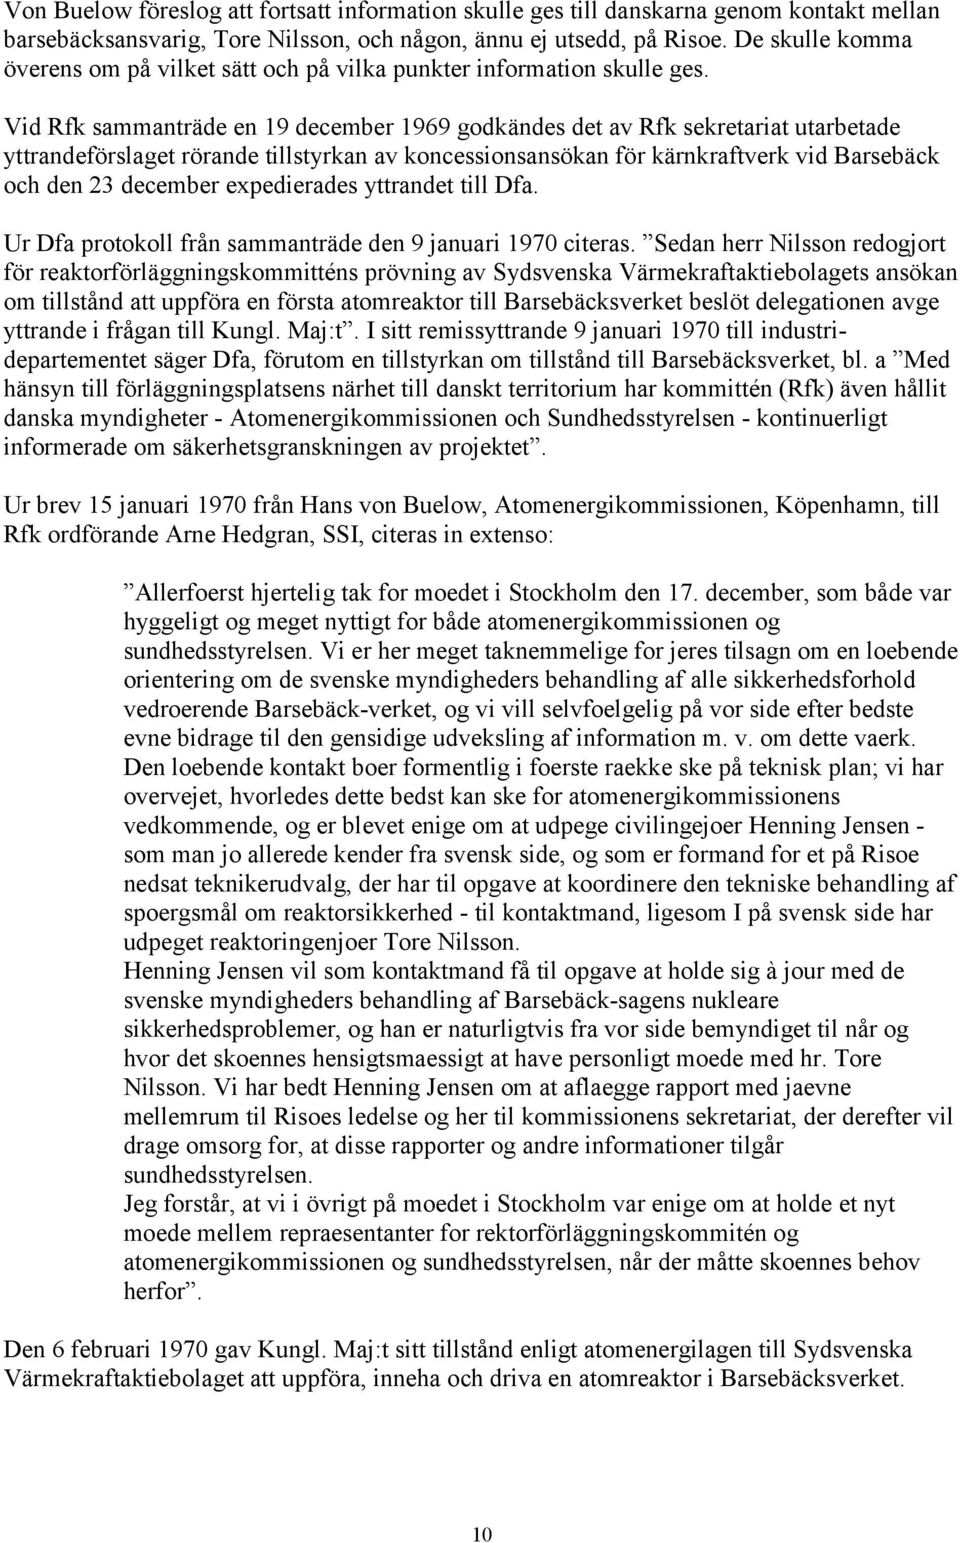 Vid Rfk sammanträde en 19 december 1969 godkändes det av Rfk sekretariat utarbetade yttrandeförslaget rörande tillstyrkan av koncessionsansökan för kärnkraftverk vid Barsebäck och den 23 december